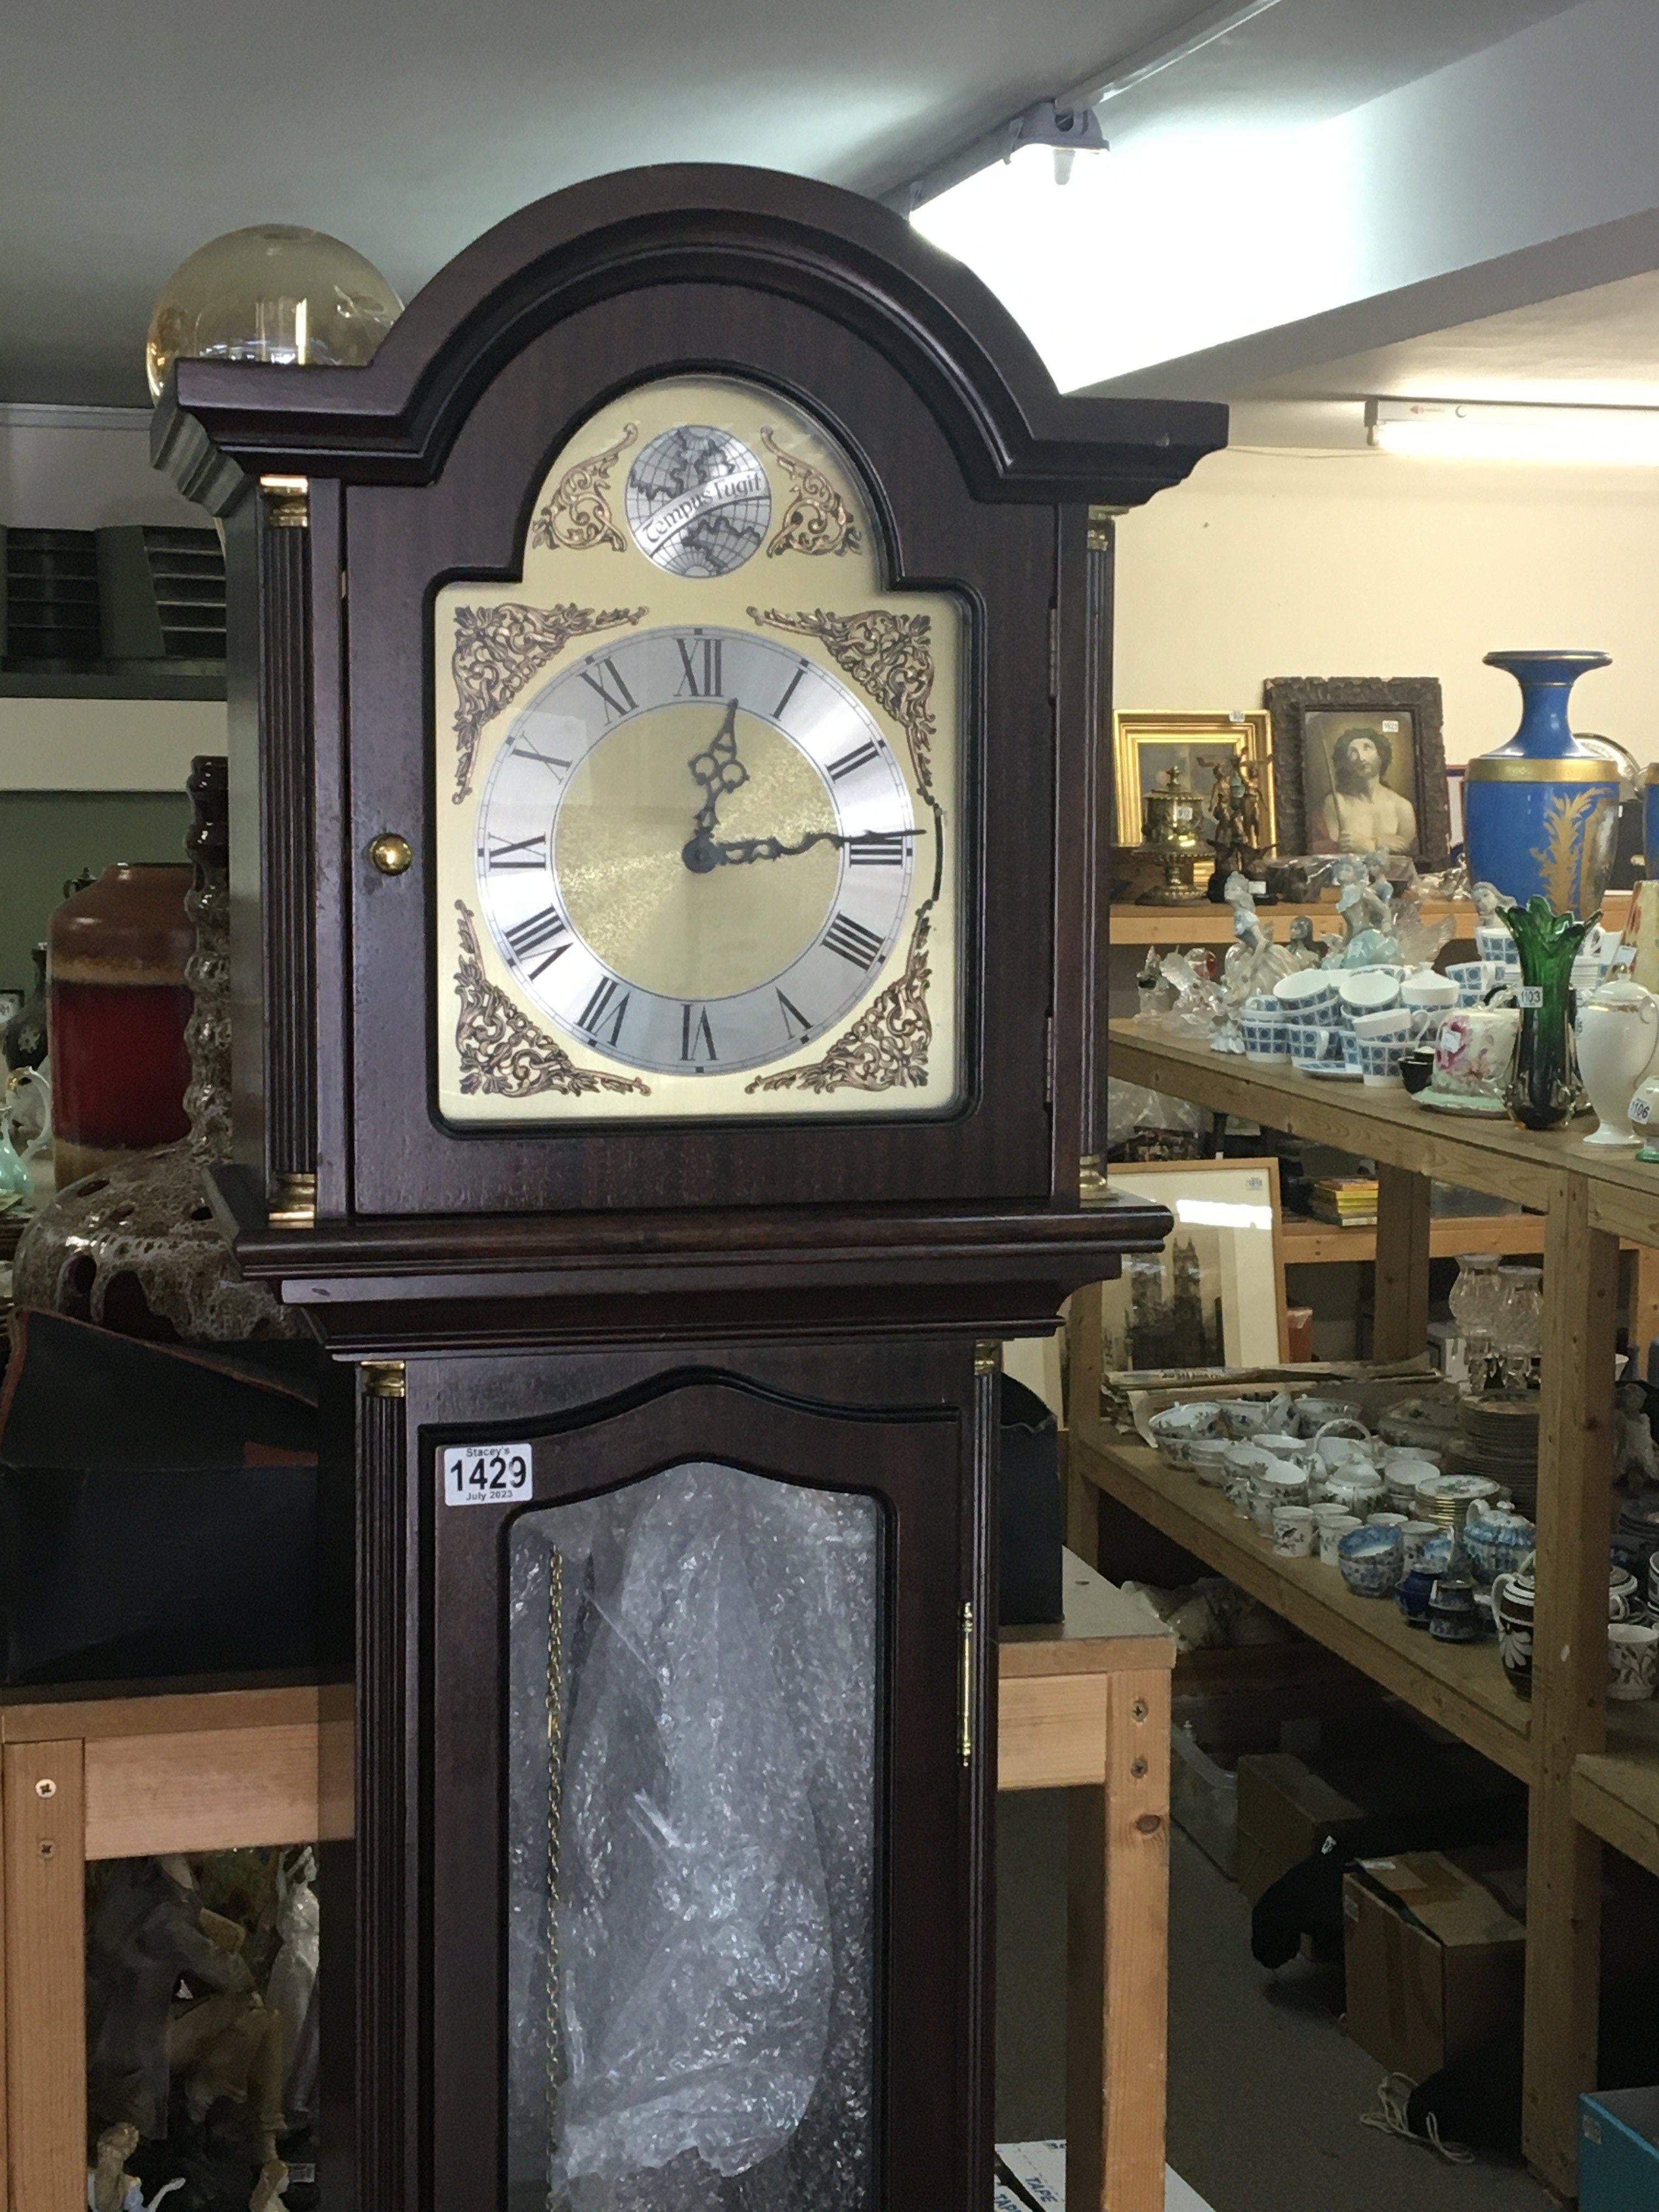 A Mahogany long case clock with three visible weig